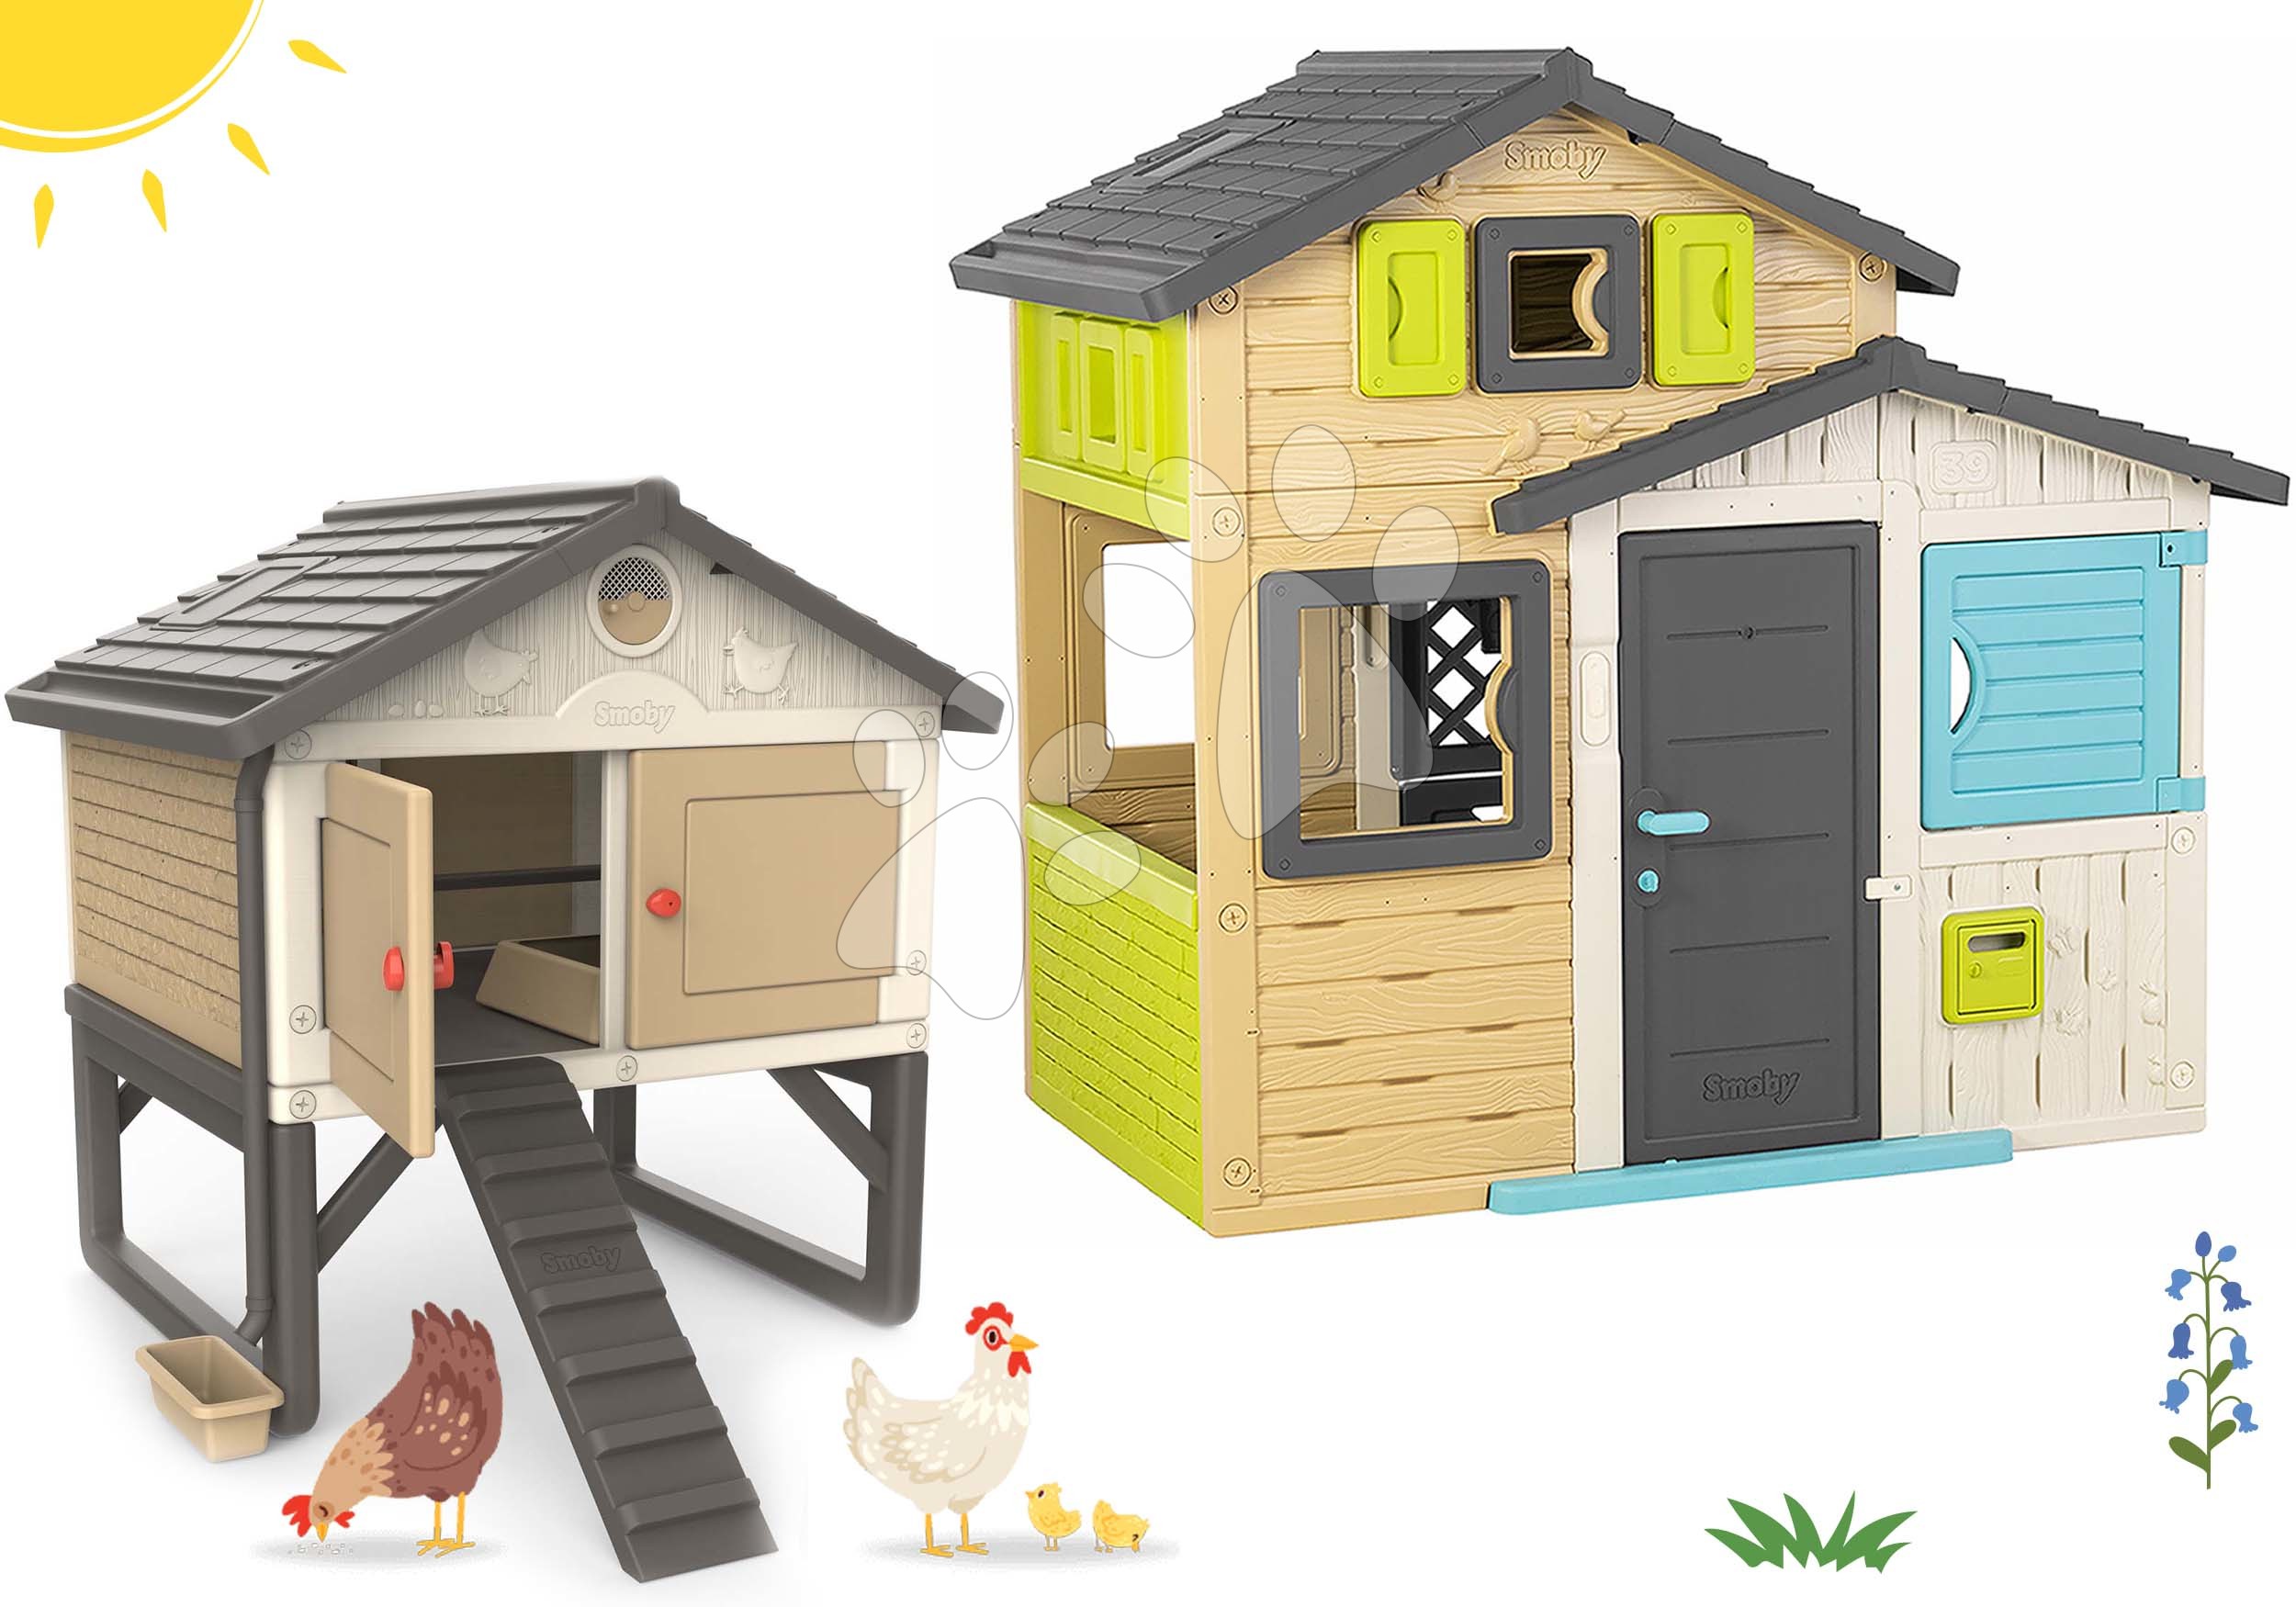 Hišice s pohištvom - Komplet hišica Prijateljev in hiška za kokoške v elegantnih barvah Friends House Evo Playhouse Smoby z možnostjo nadgradnje